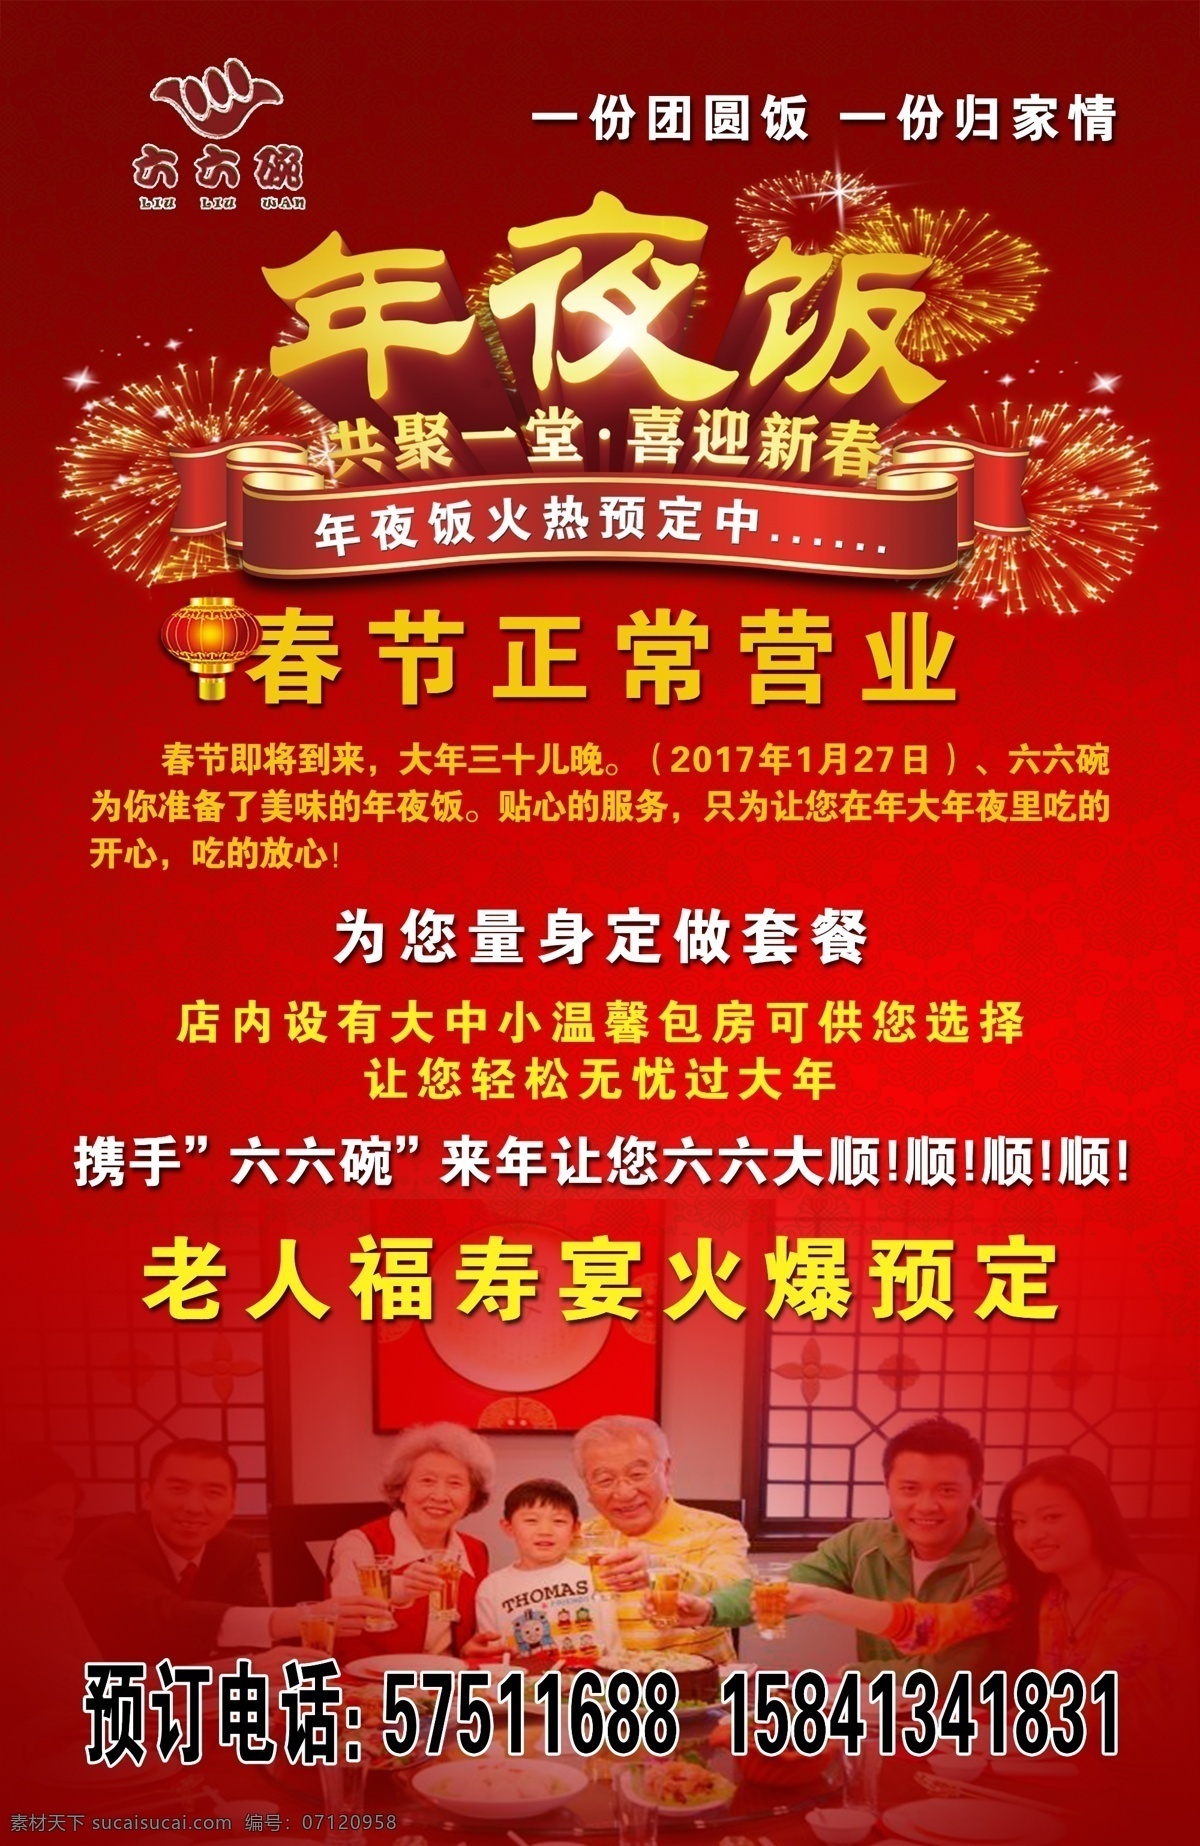 红色饭店传单 年夜饭 传单 海报 kt 板 春节 正常 营业 宣传海报 全家福年夜饭